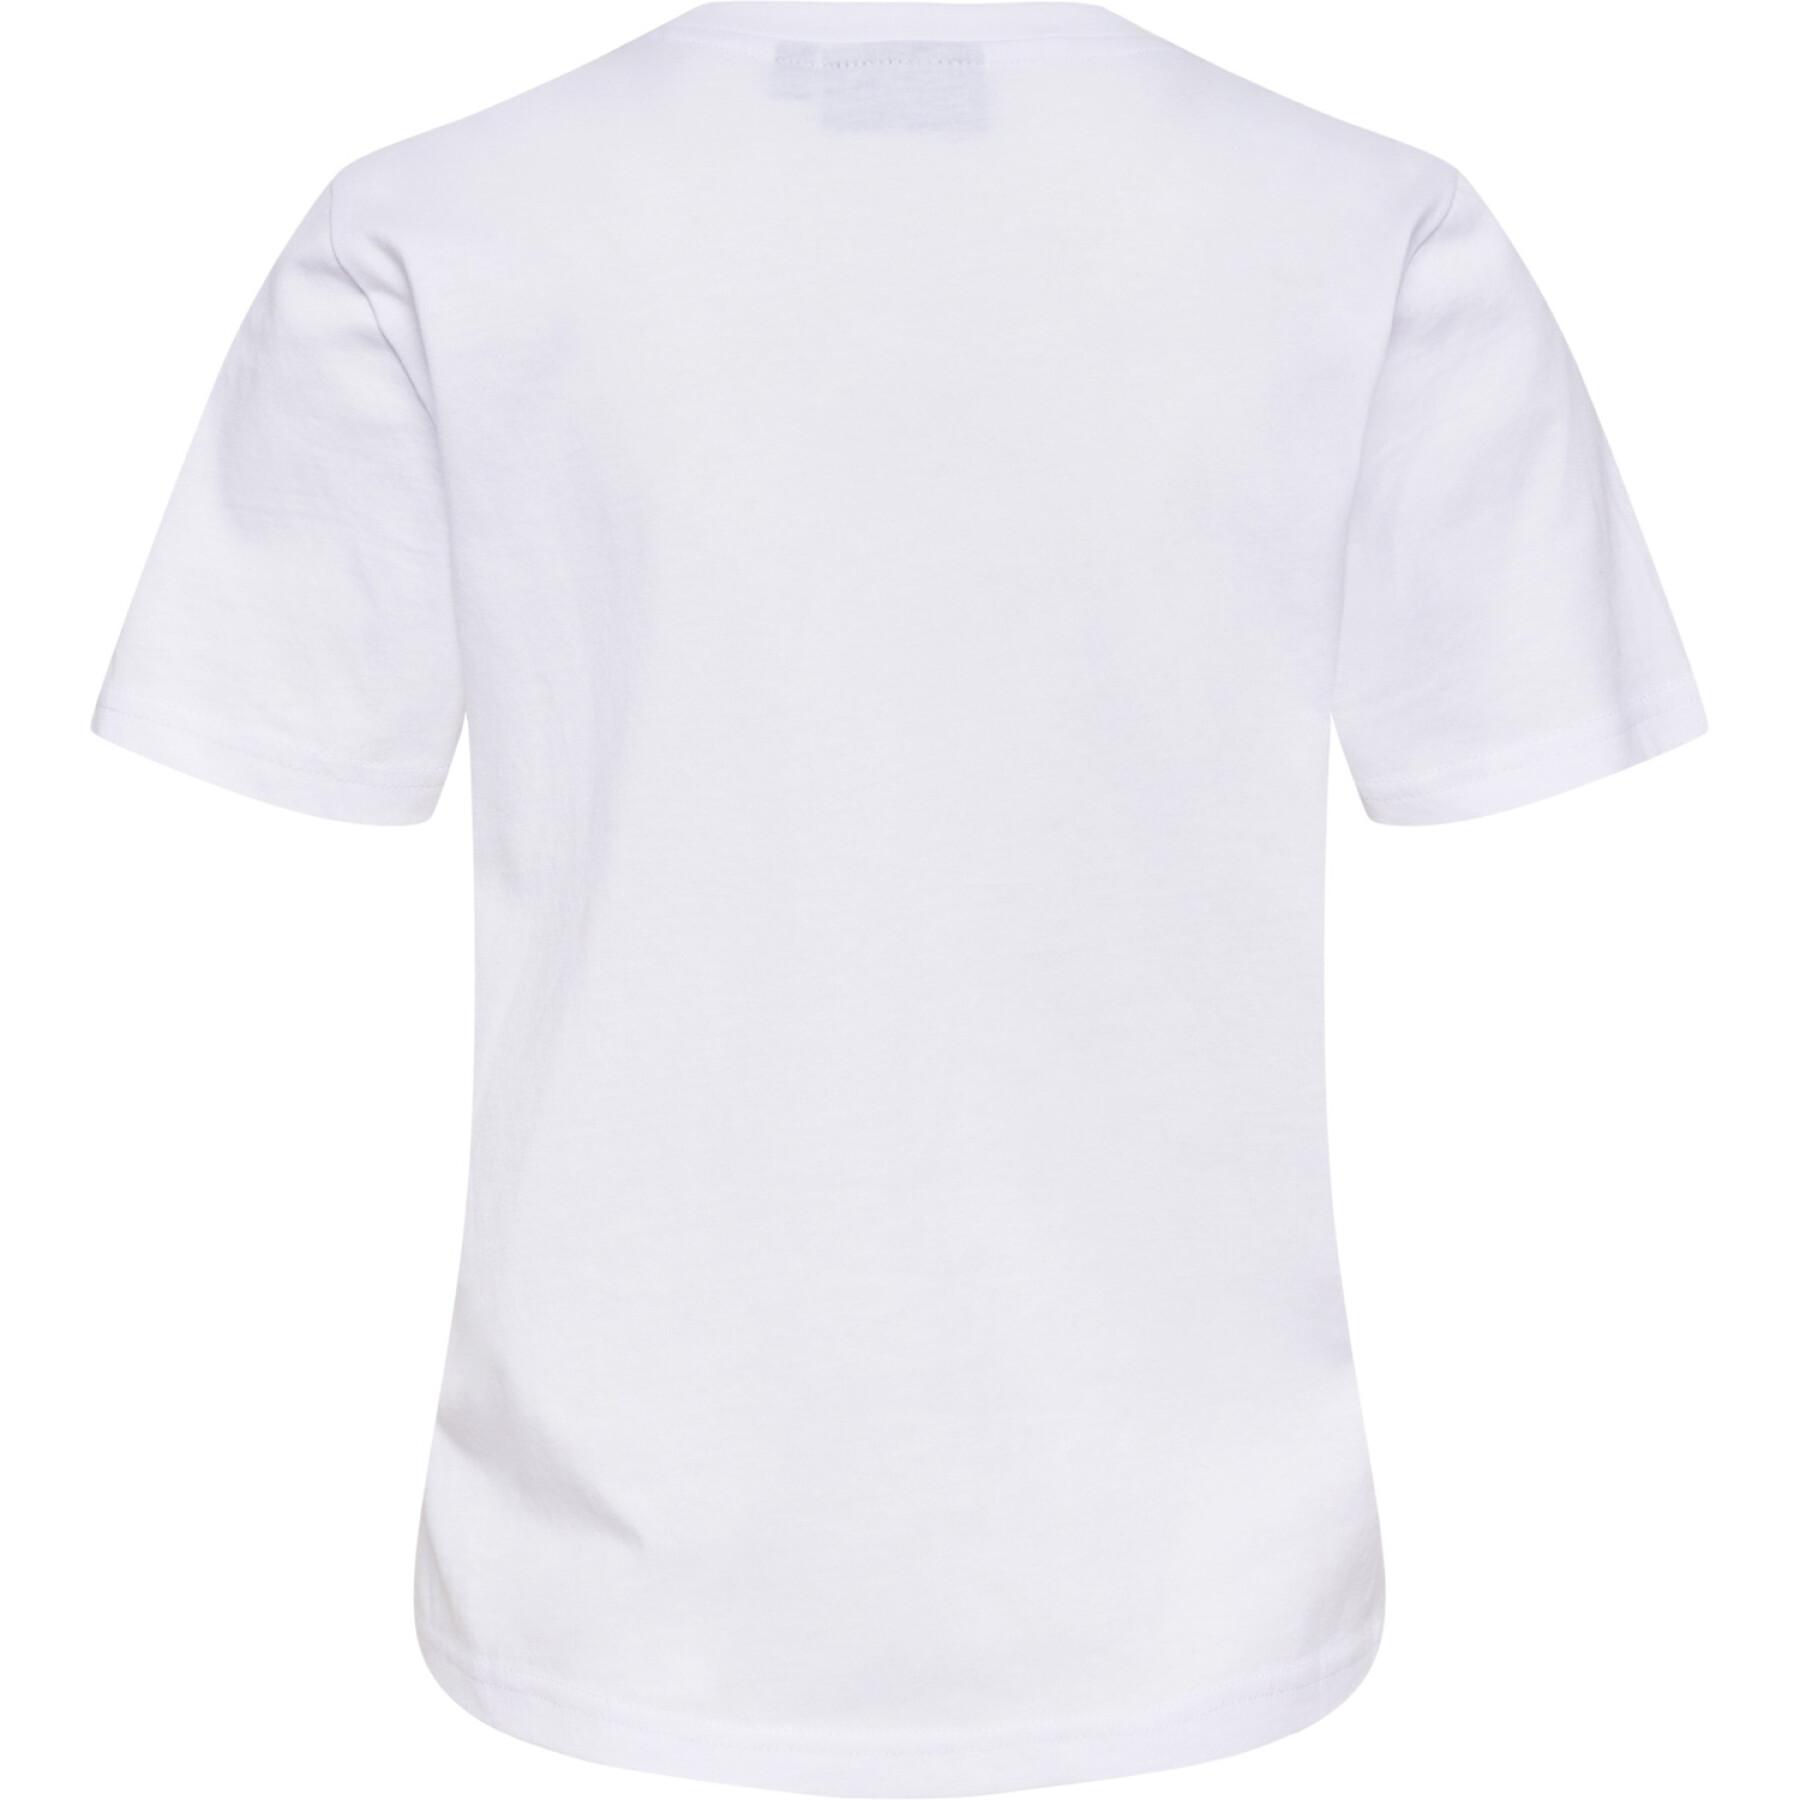 T-shirt - T-Shirts Women\'s Icons Hummel - Sportswear Women -